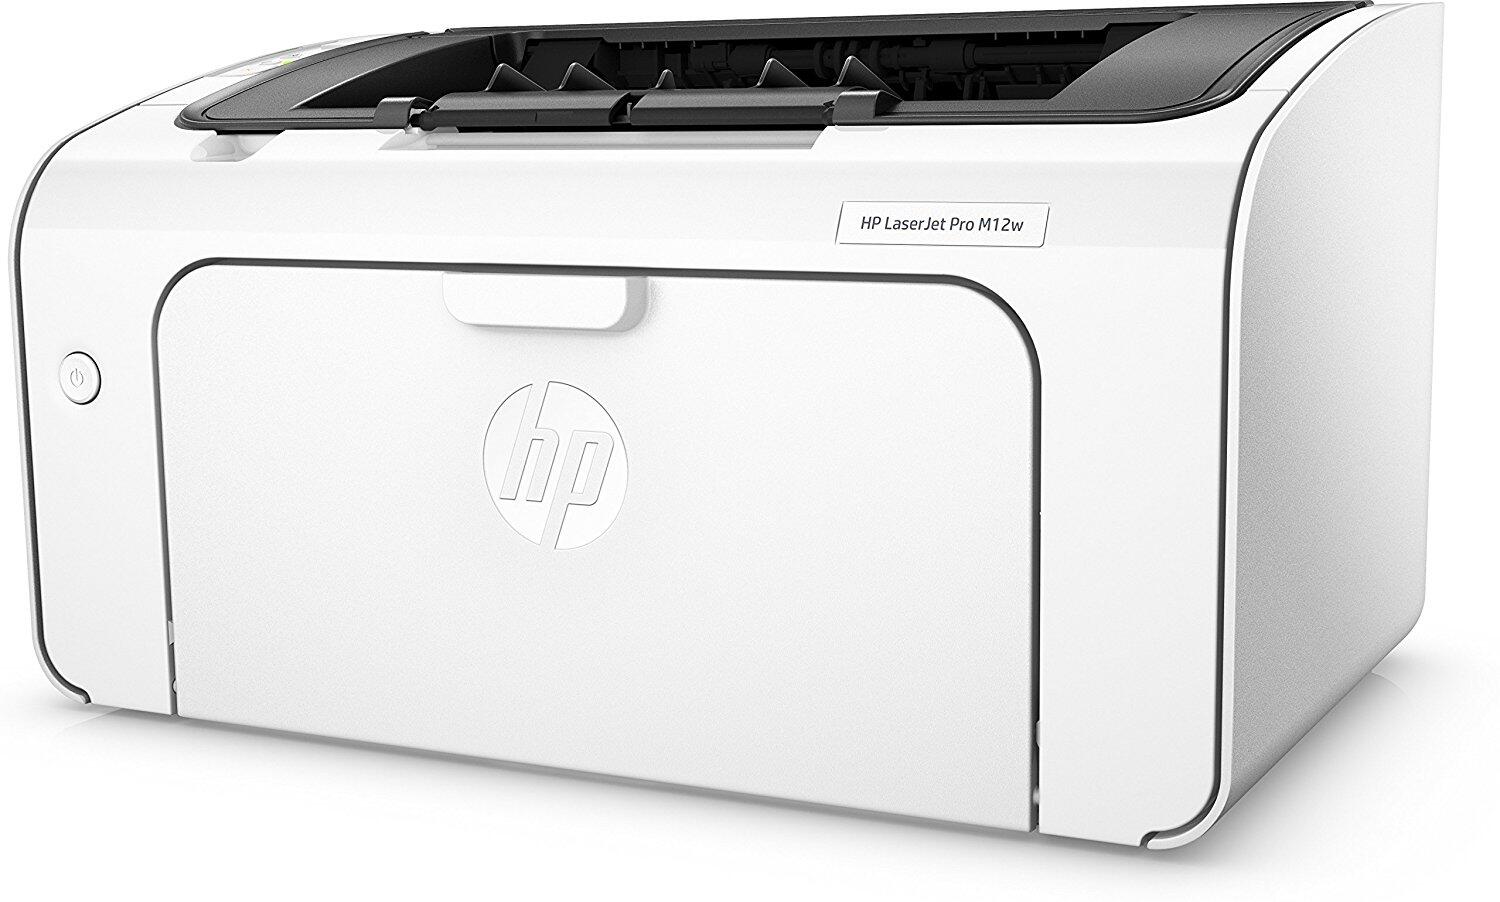 HP LaserJet Pro M 12 w